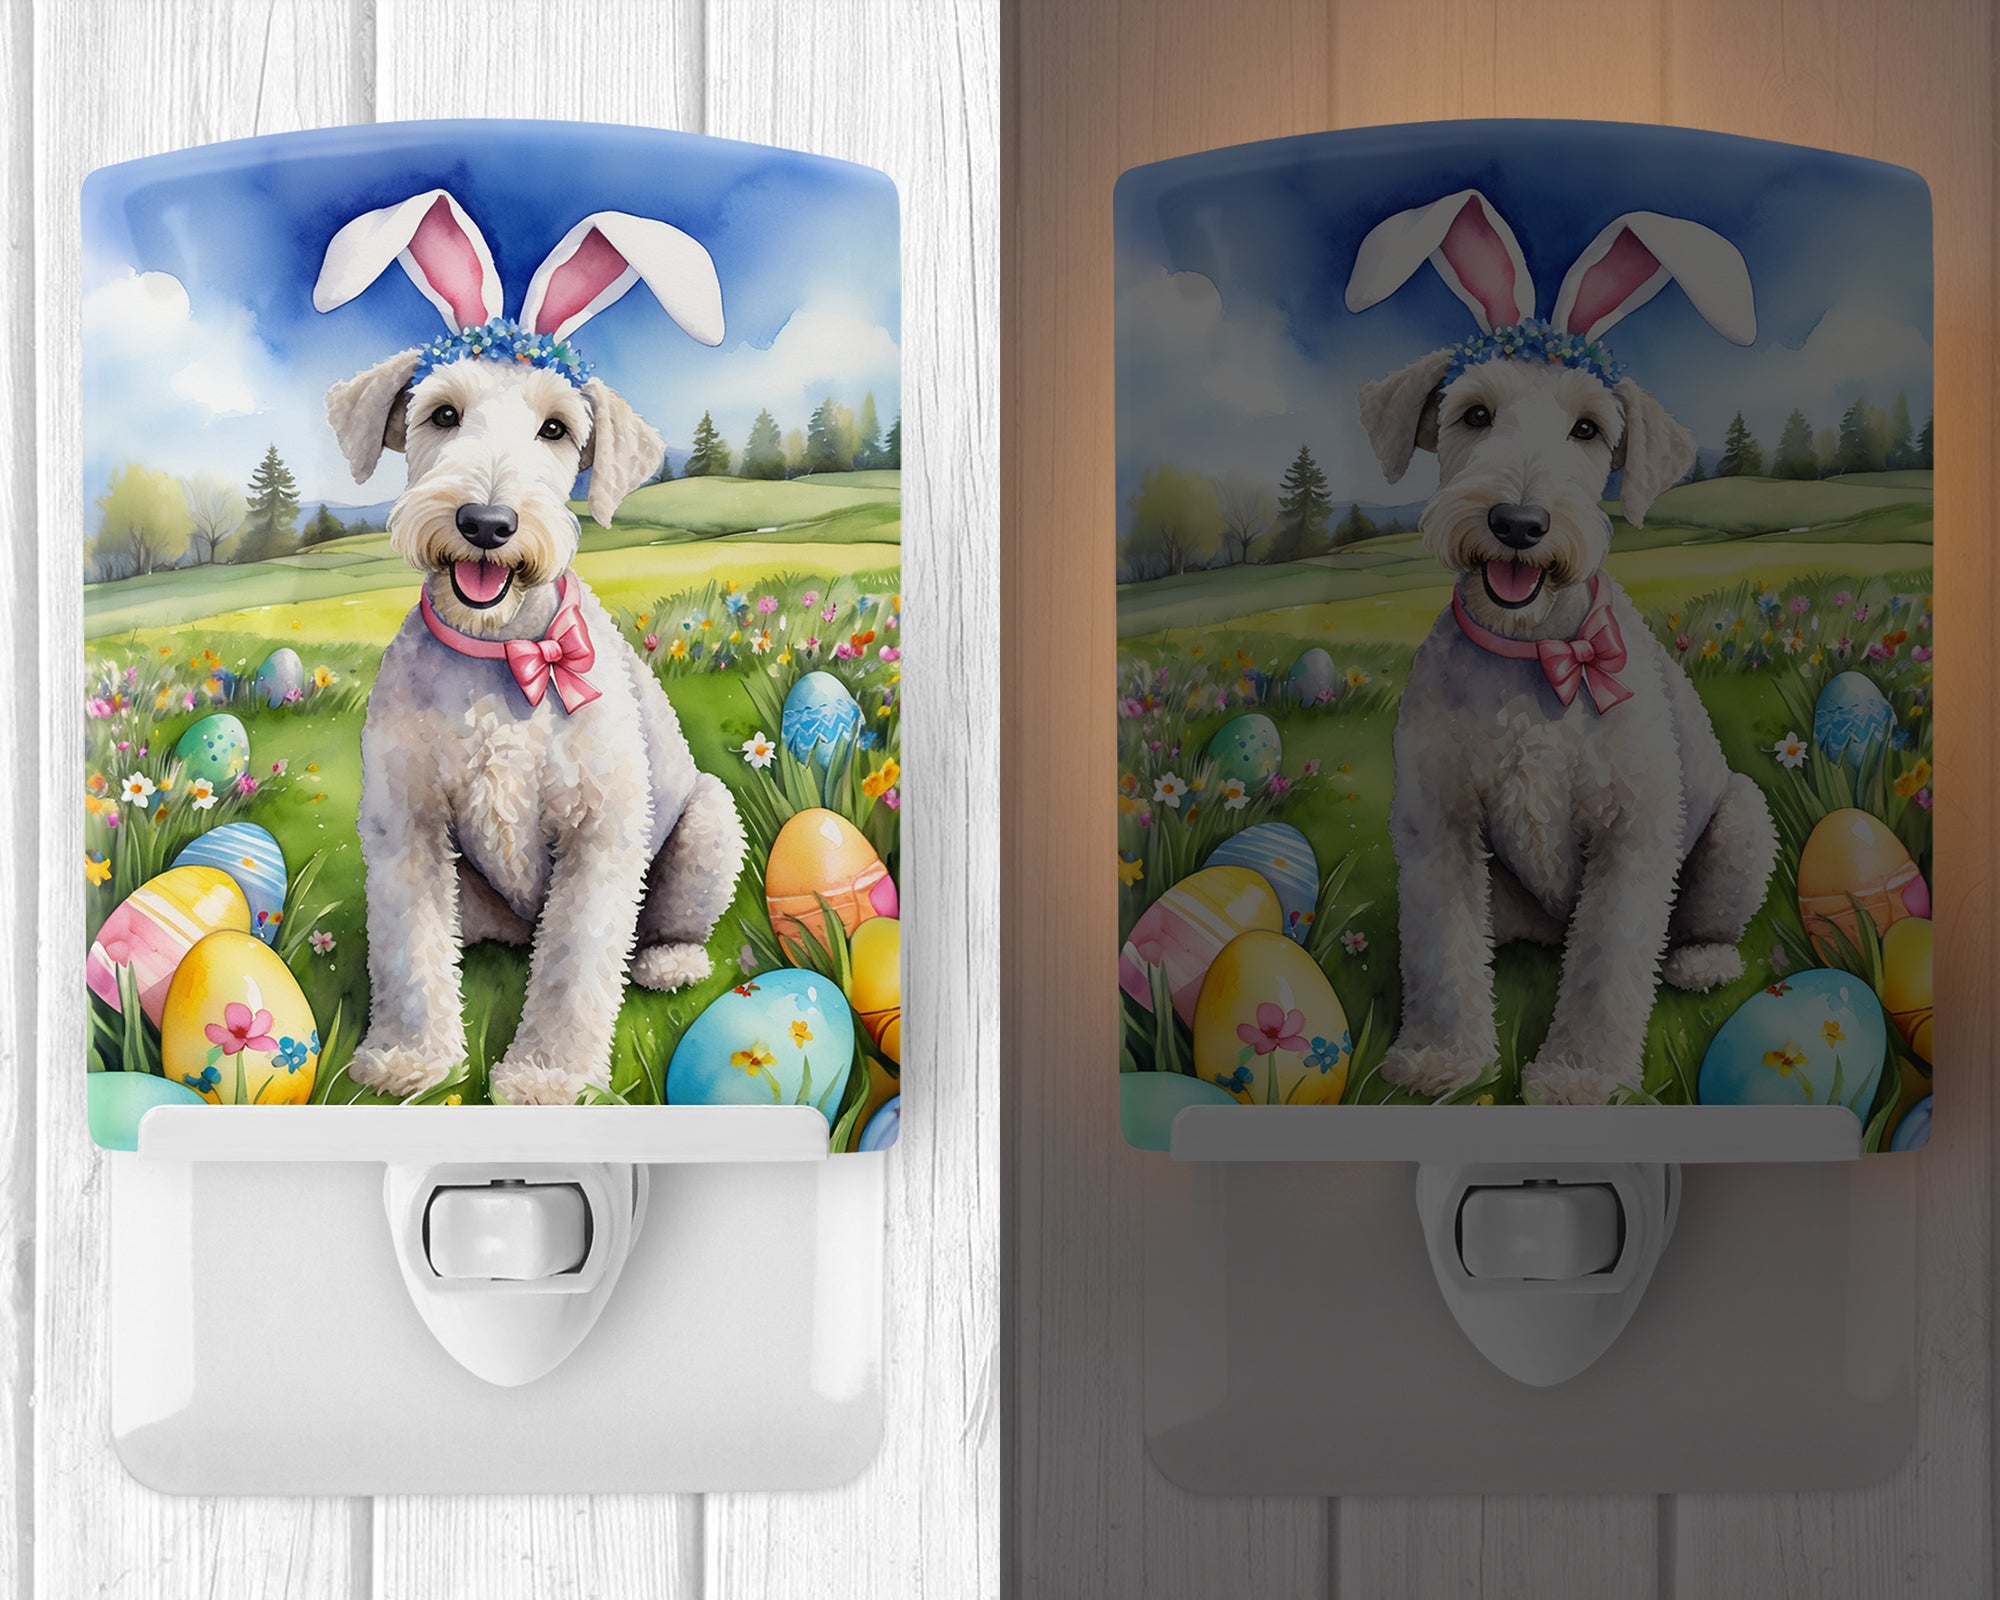 Buy this Bedlington Terrier Easter Egg Hunt Ceramic Night Light